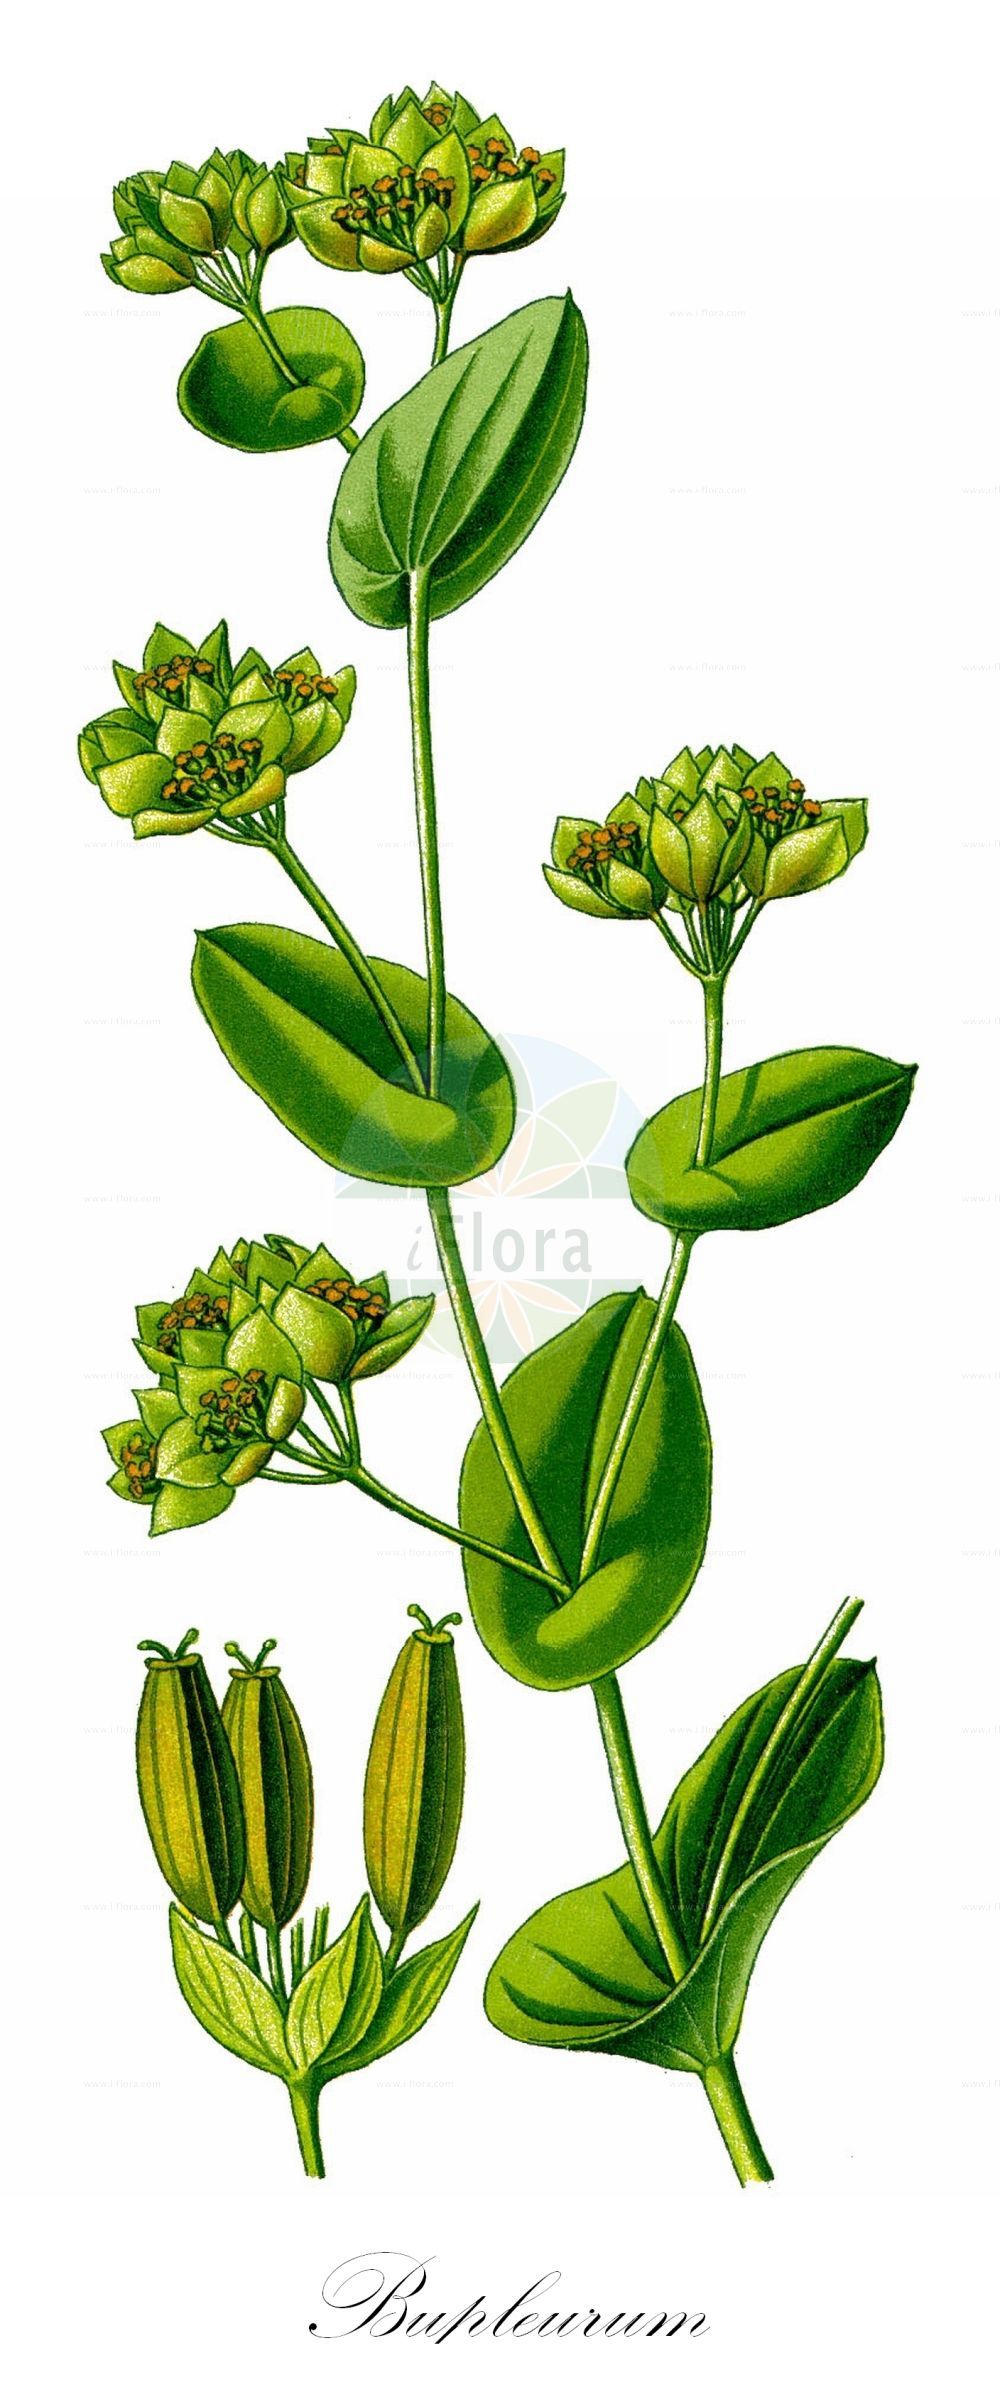 Historische Abbildung von Bupleurum rotundifolium (Rundblättriges Hasenohr - Thorow-wax). Das Bild zeigt Blatt, Bluete, Frucht und Same. ---- Historical Drawing of Bupleurum rotundifolium (Rundblättriges Hasenohr - Thorow-wax). The image is showing leaf, flower, fruit and seed.(Bupleurum rotundifolium,Rundblättriges Hasenohr,Thorow-wax,Bupleurum rotundifolium,Rundblaettriges Hasenohr,Acker-Hasenohr,Thorow-wax,Hare's-ear,Modesty,Bupleurum,Hasenohr,Hare's Ear,Apiaceae,Doldengewächse,Carrot family,Blatt,Bluete,Frucht,Same,leaf,flower,fruit,seed,Thomé (1885))